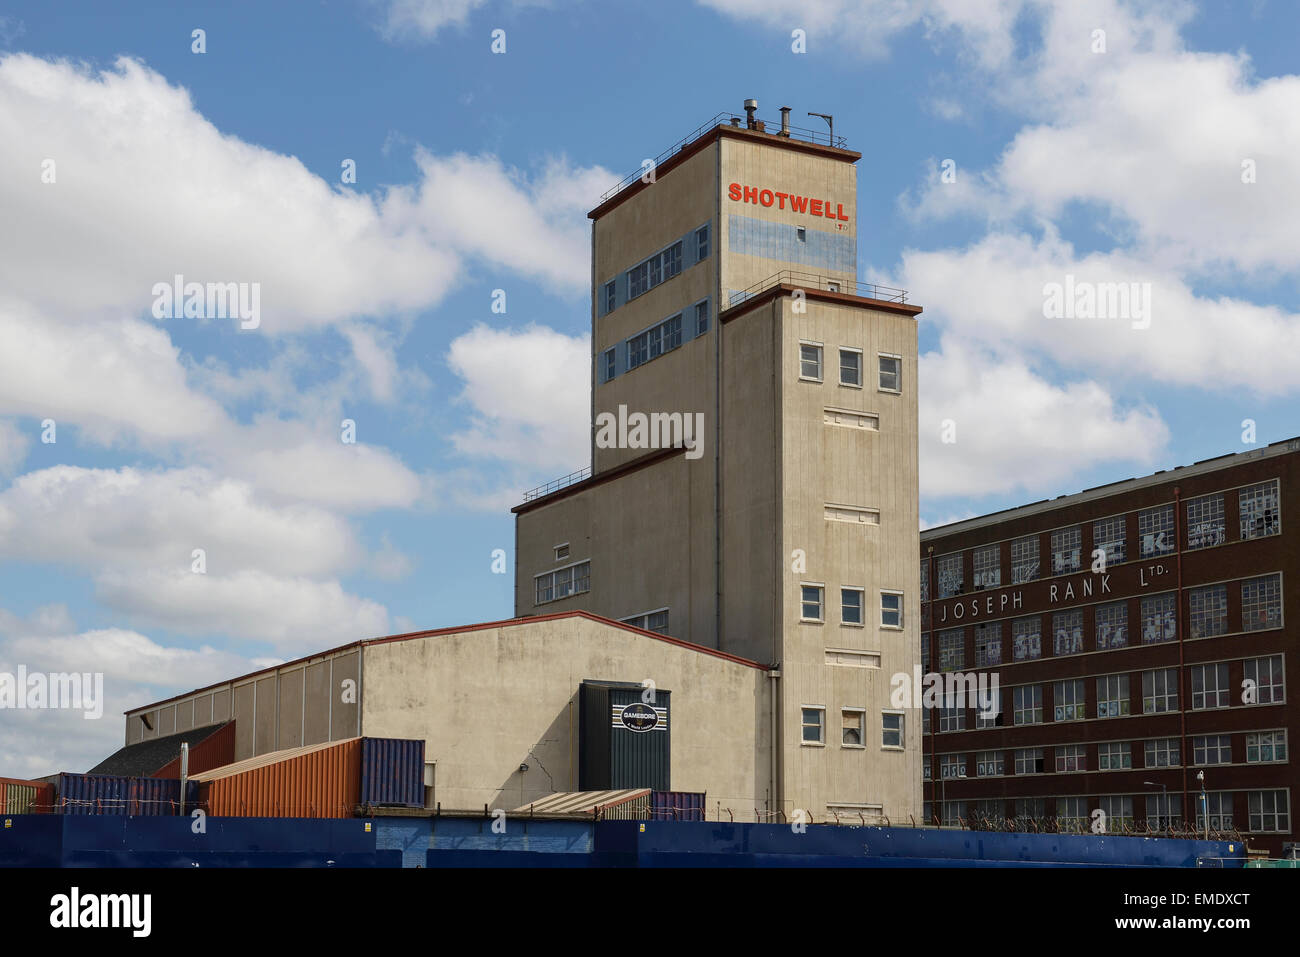 La torre di Shotwell e Giuseppe Rank edifici in Hull City Centre Regno Unito Foto Stock